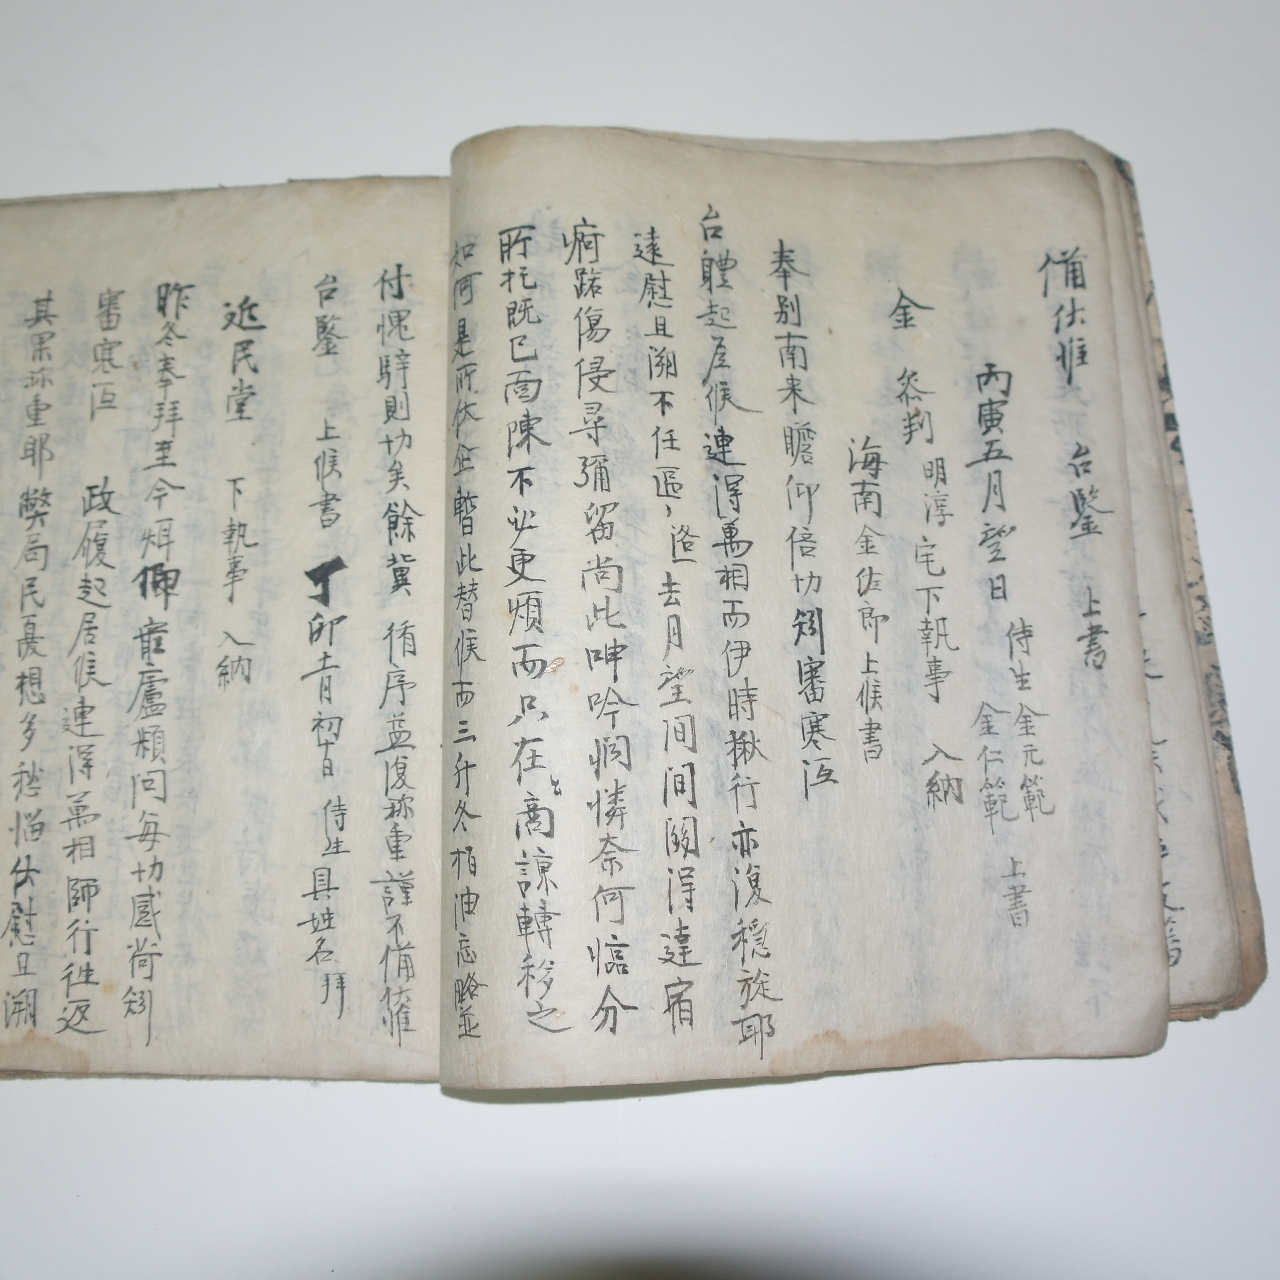 조선시대 고필사본 만록수득목기(漫錄隨得牧記) 1책완질